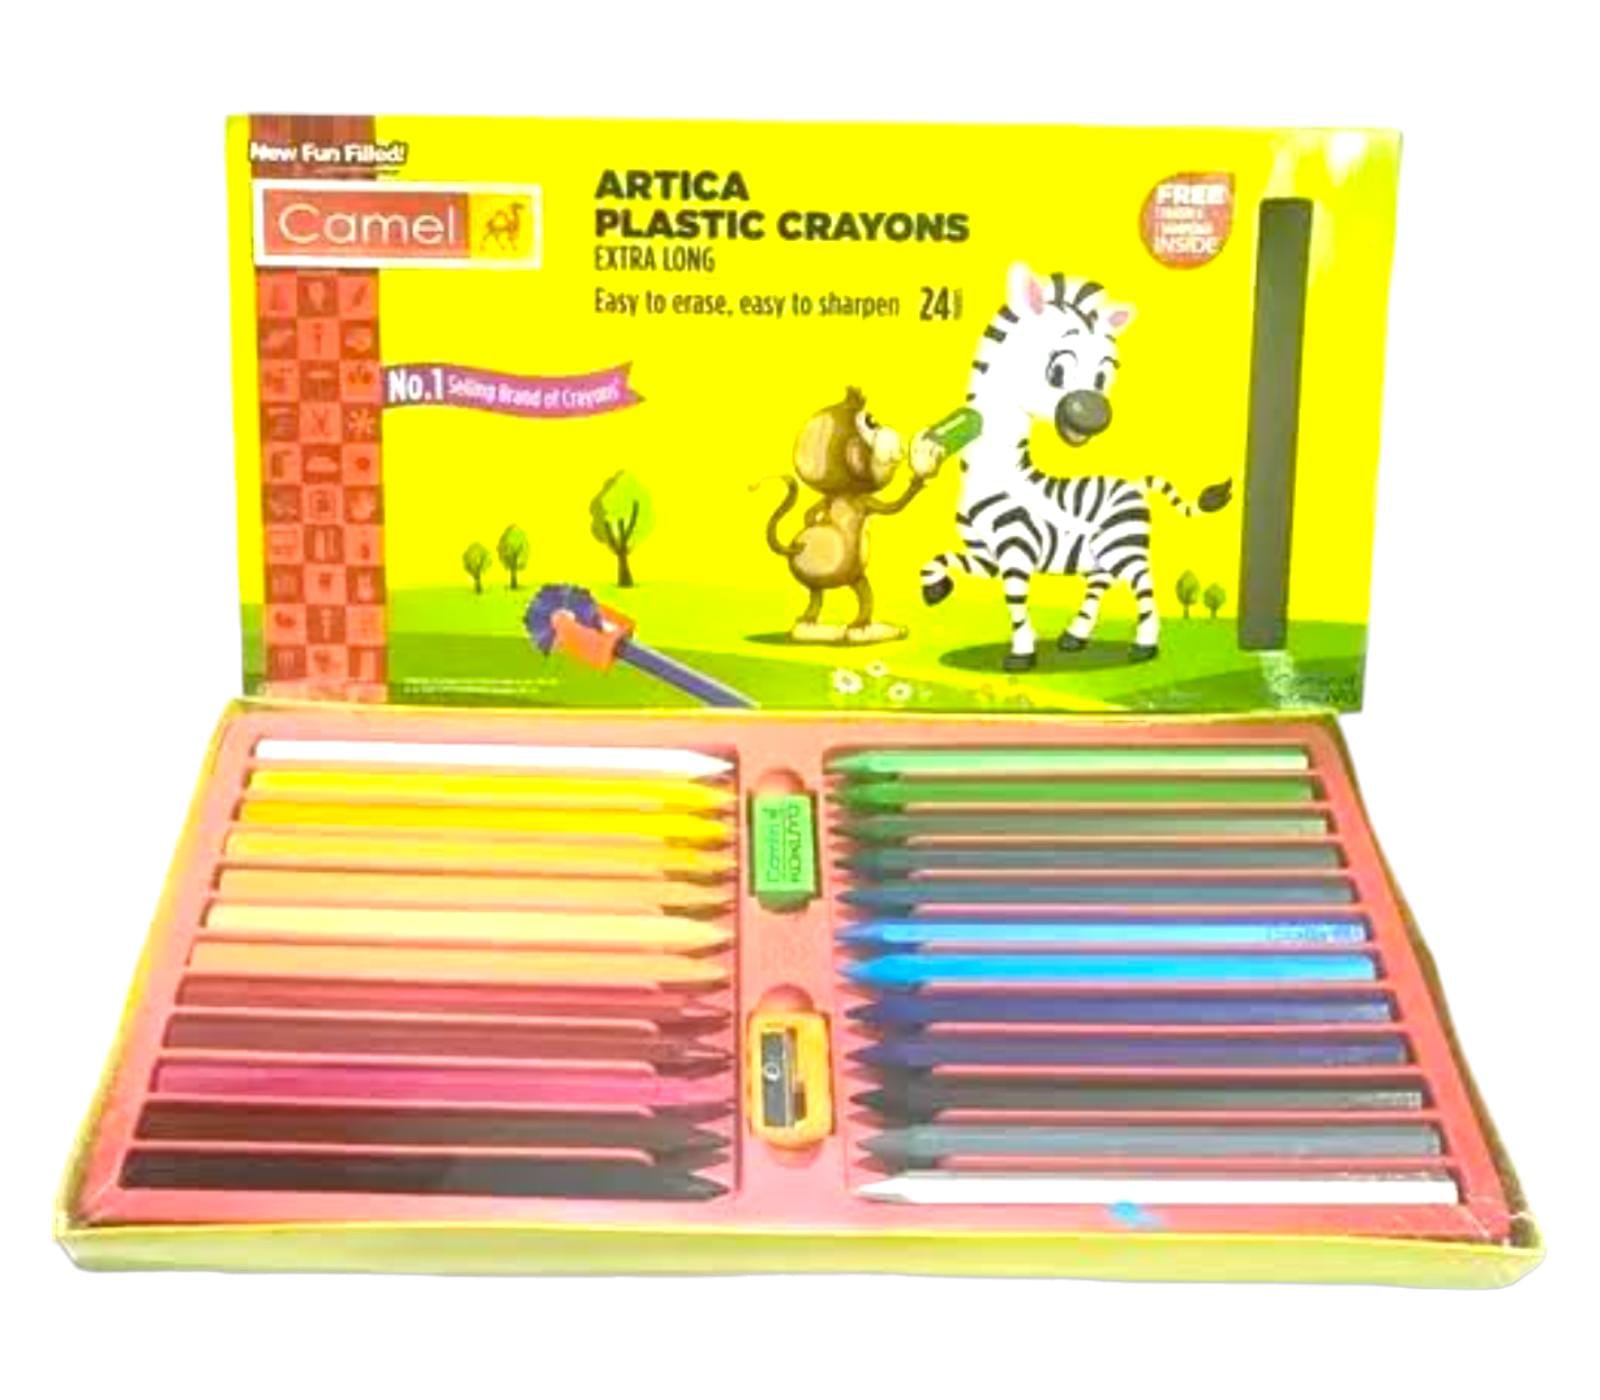 Artica Plastic Crayons